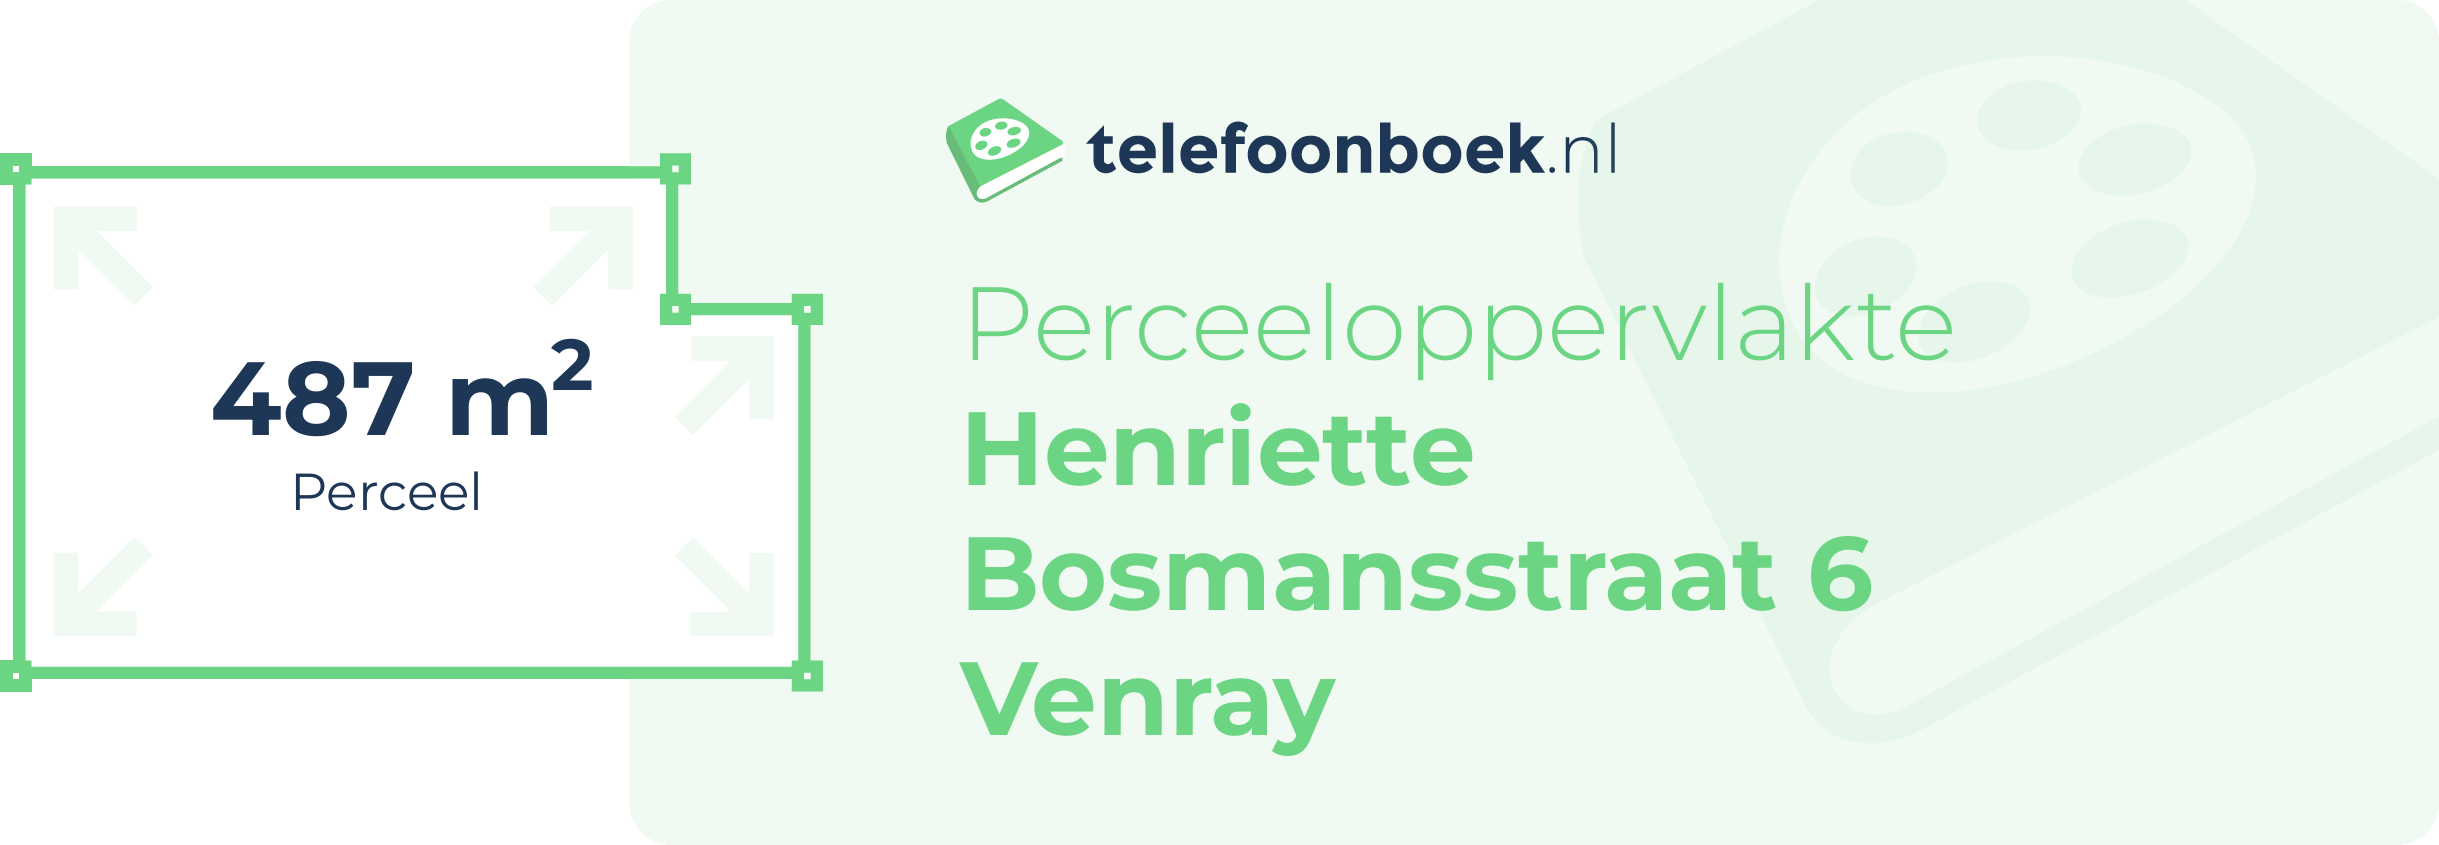 Perceeloppervlakte Henriette Bosmansstraat 6 Venray